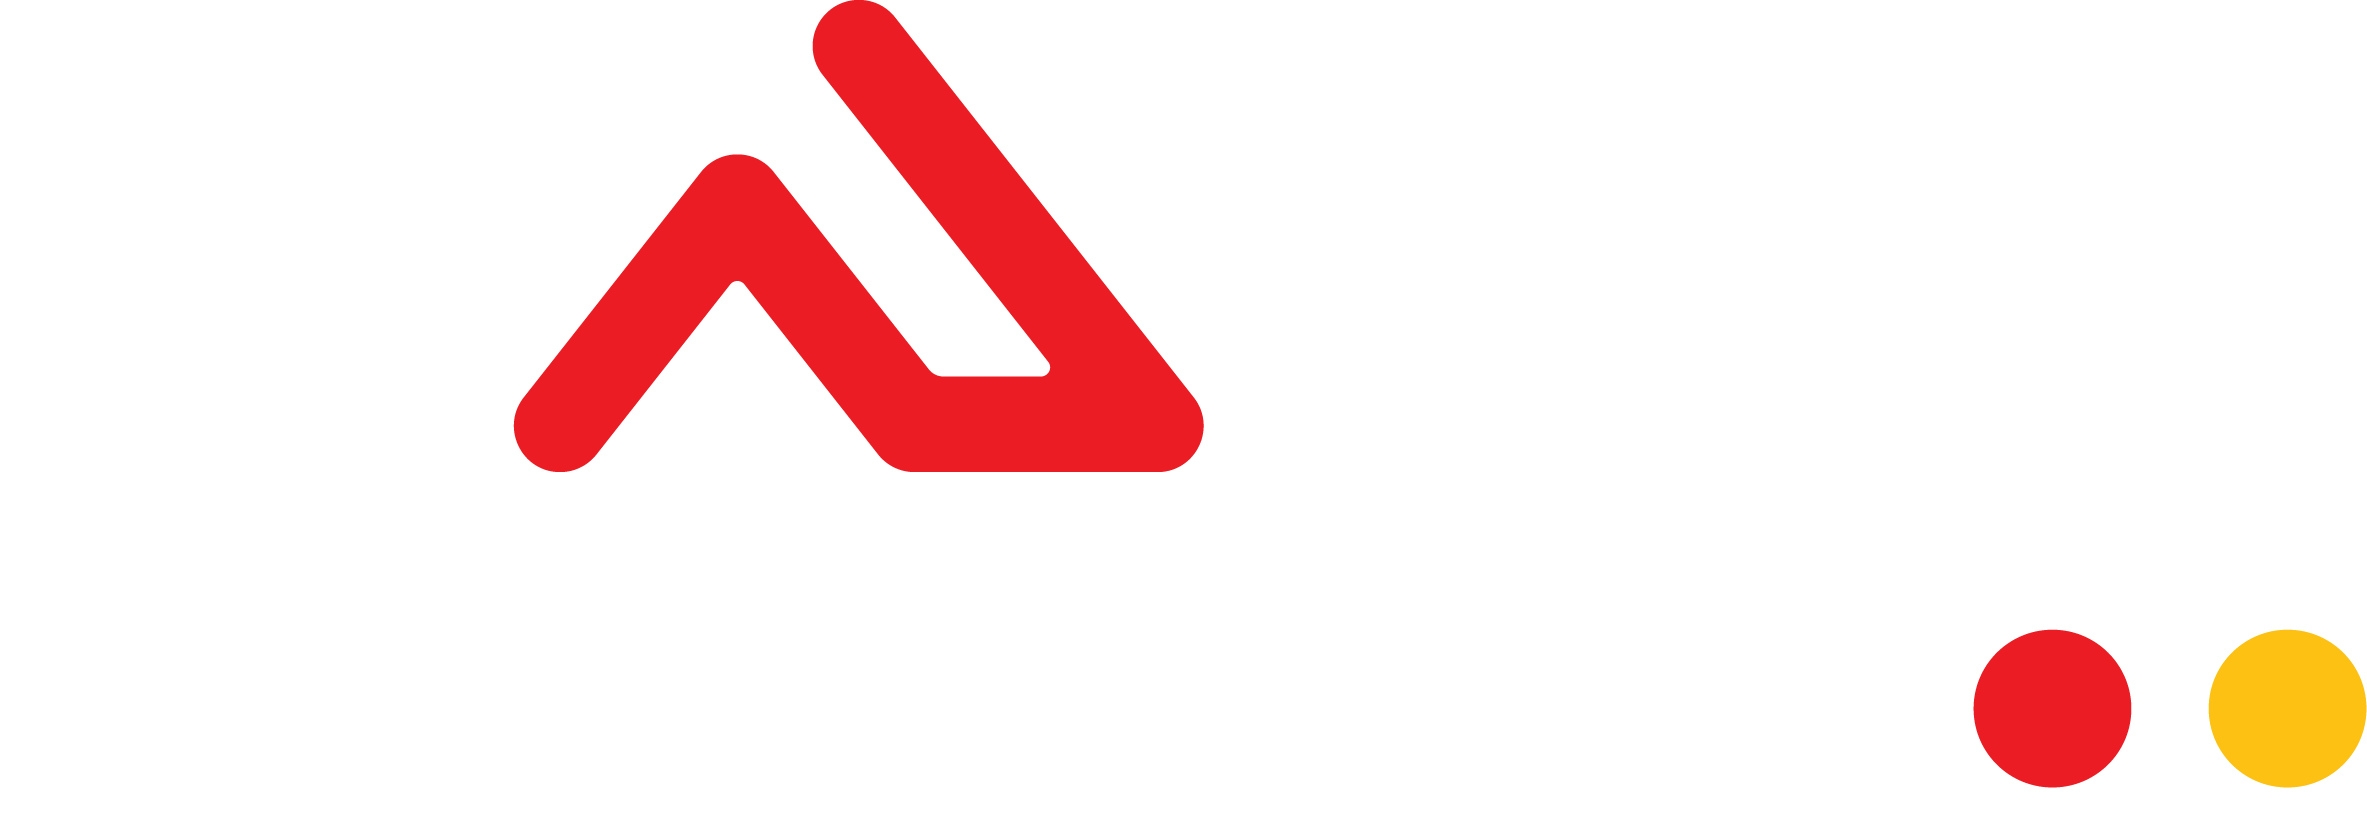 Công ty TNHH DANN VIỆT Nam thông báo lịch nghỉ tết nguyên đán 2021